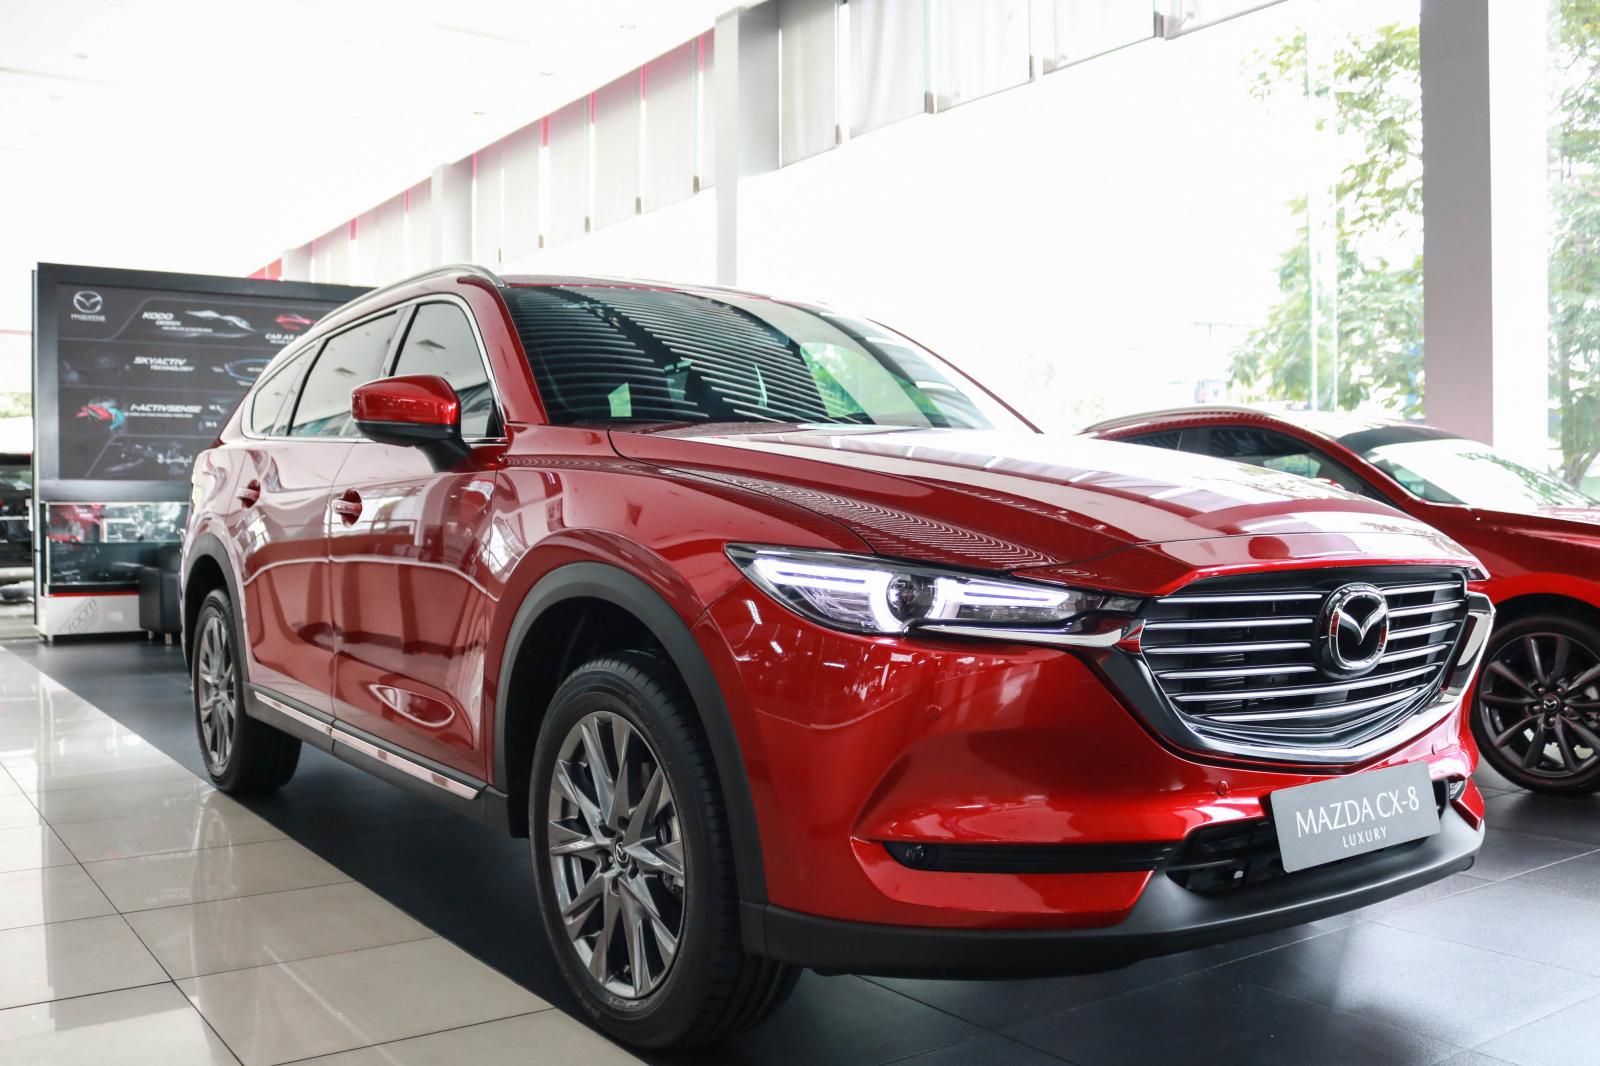 Mazda Mazda khác 2020 - Mazda CX8 2020 Luxury màu đỏ giao liền, ưu đãi lên tới 95 triệu, tặng bảo hiểm + phụ kiện